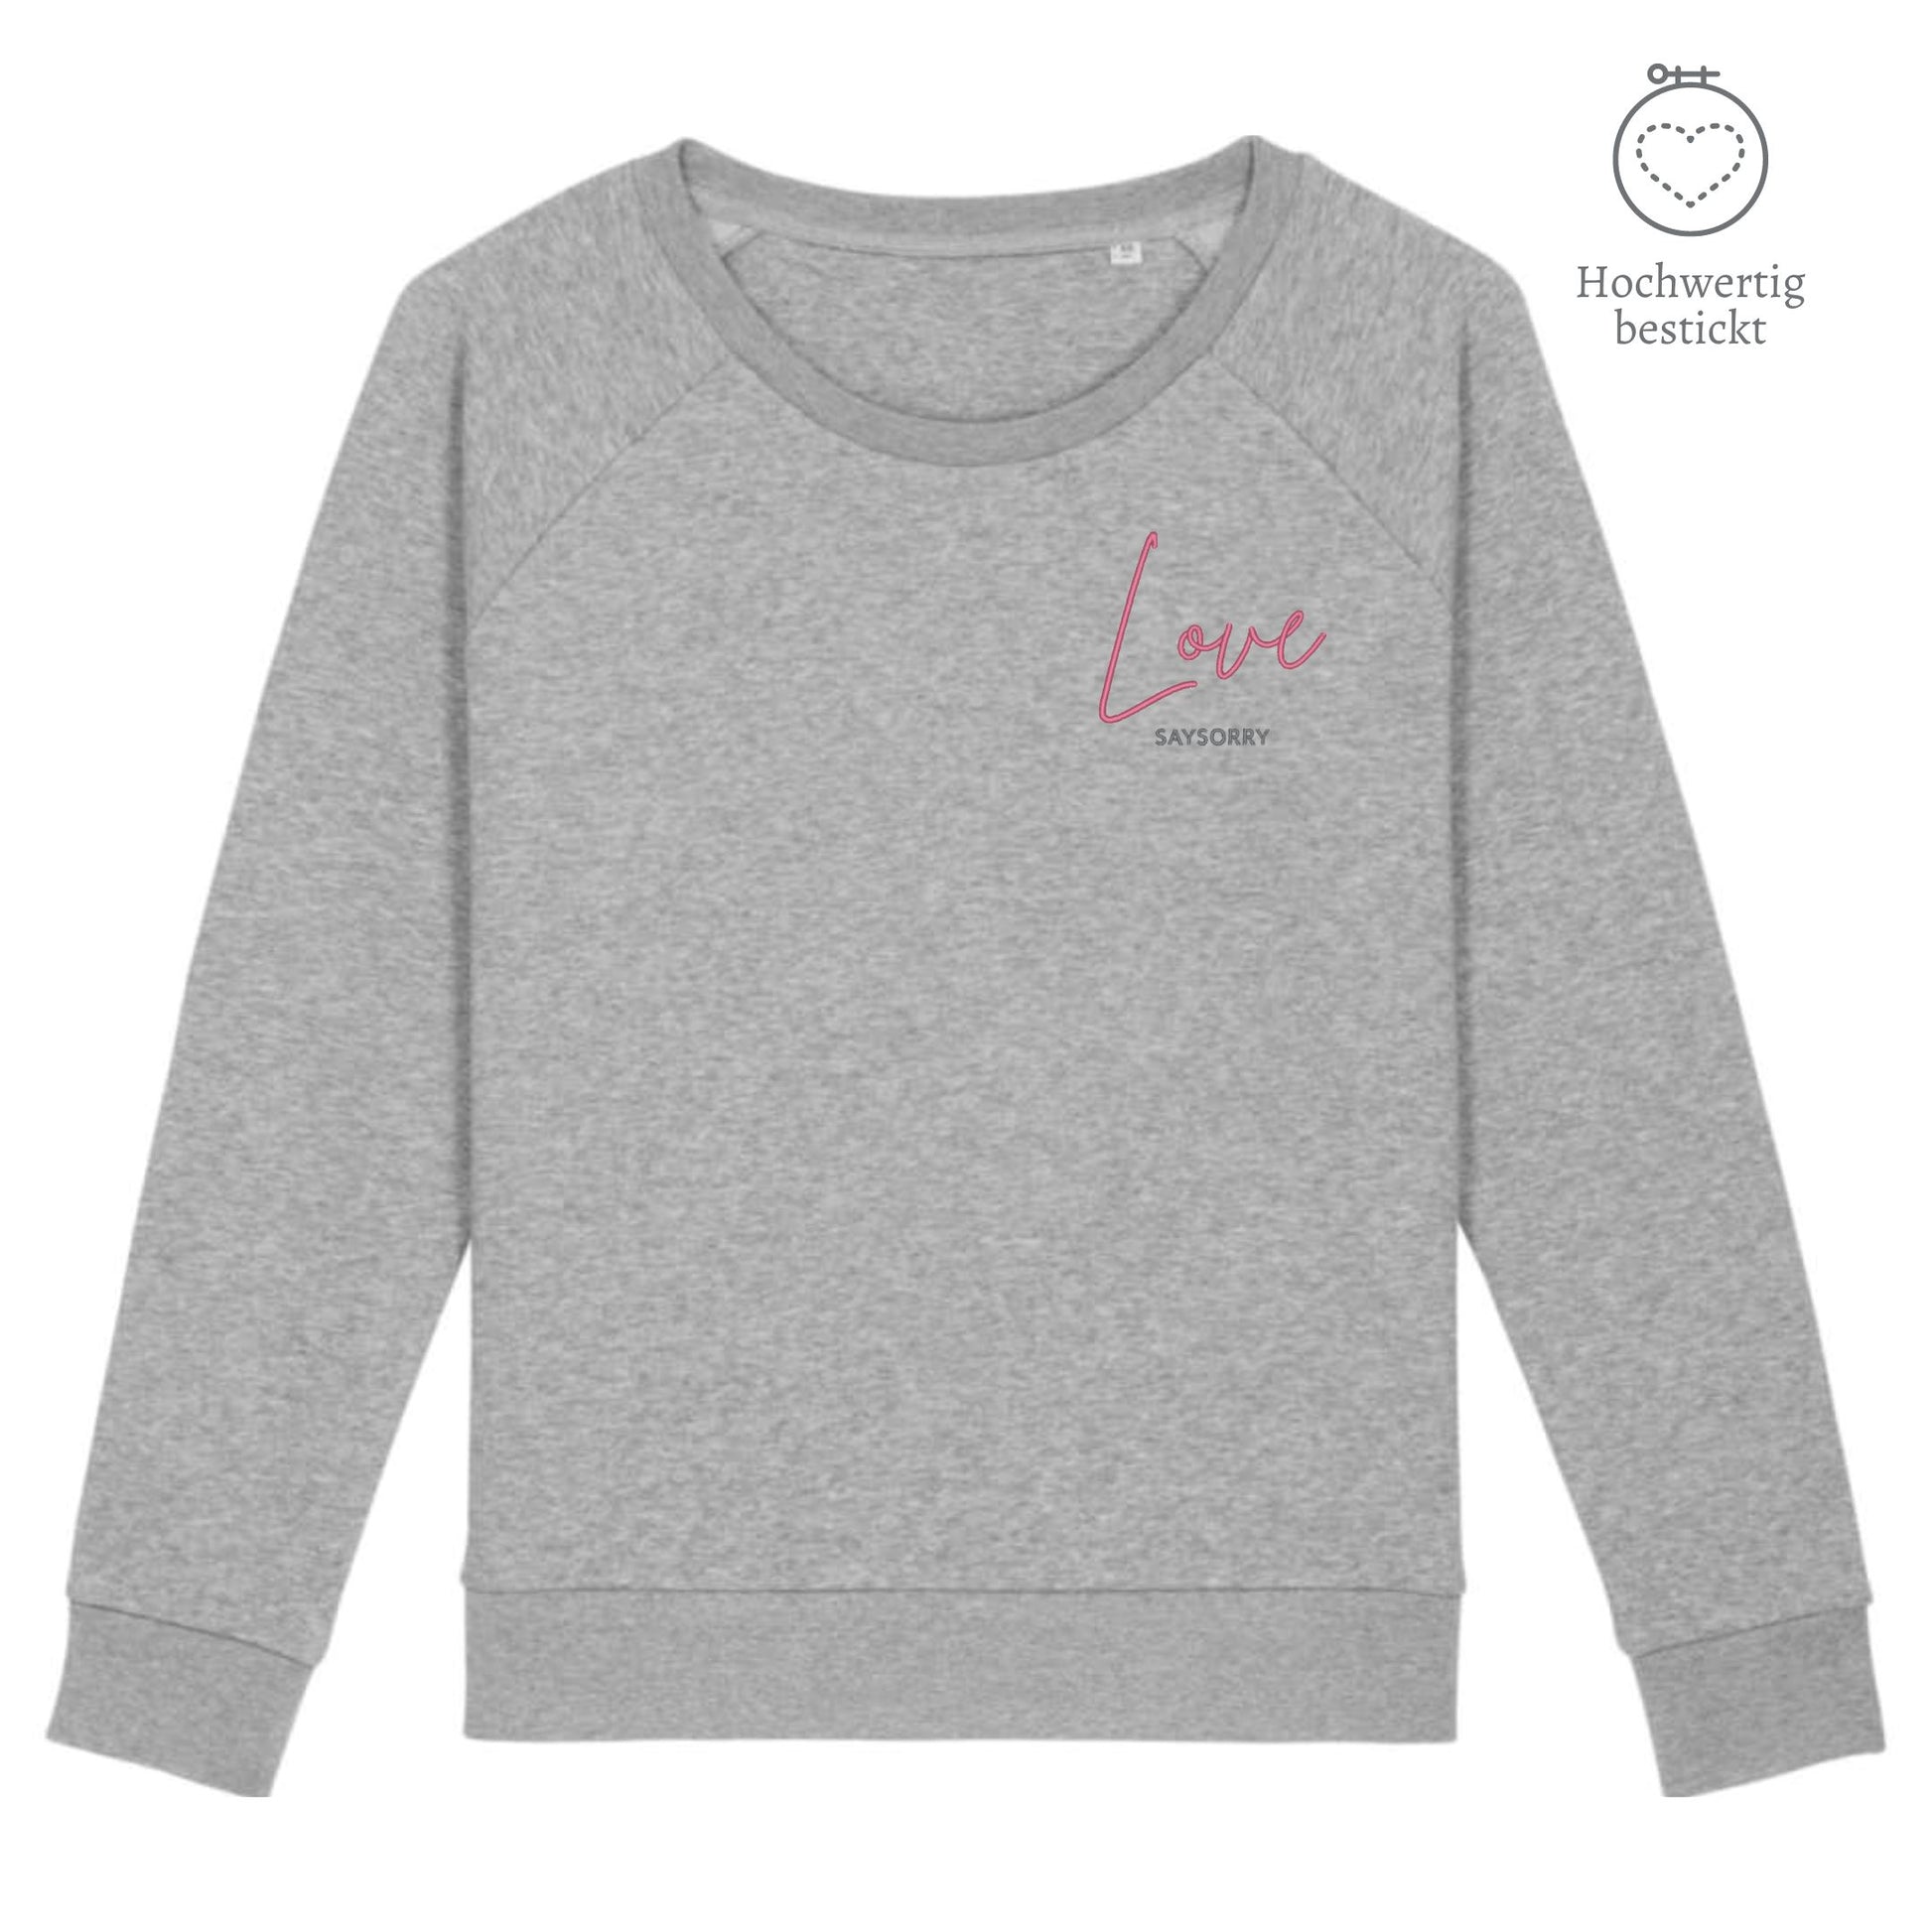 Organic Sweatshirt mit weitem Rundhals-Ausschnitt »Love« hochwertig bestickt Shirt SAYSORRY Cream Heather Grey XS 